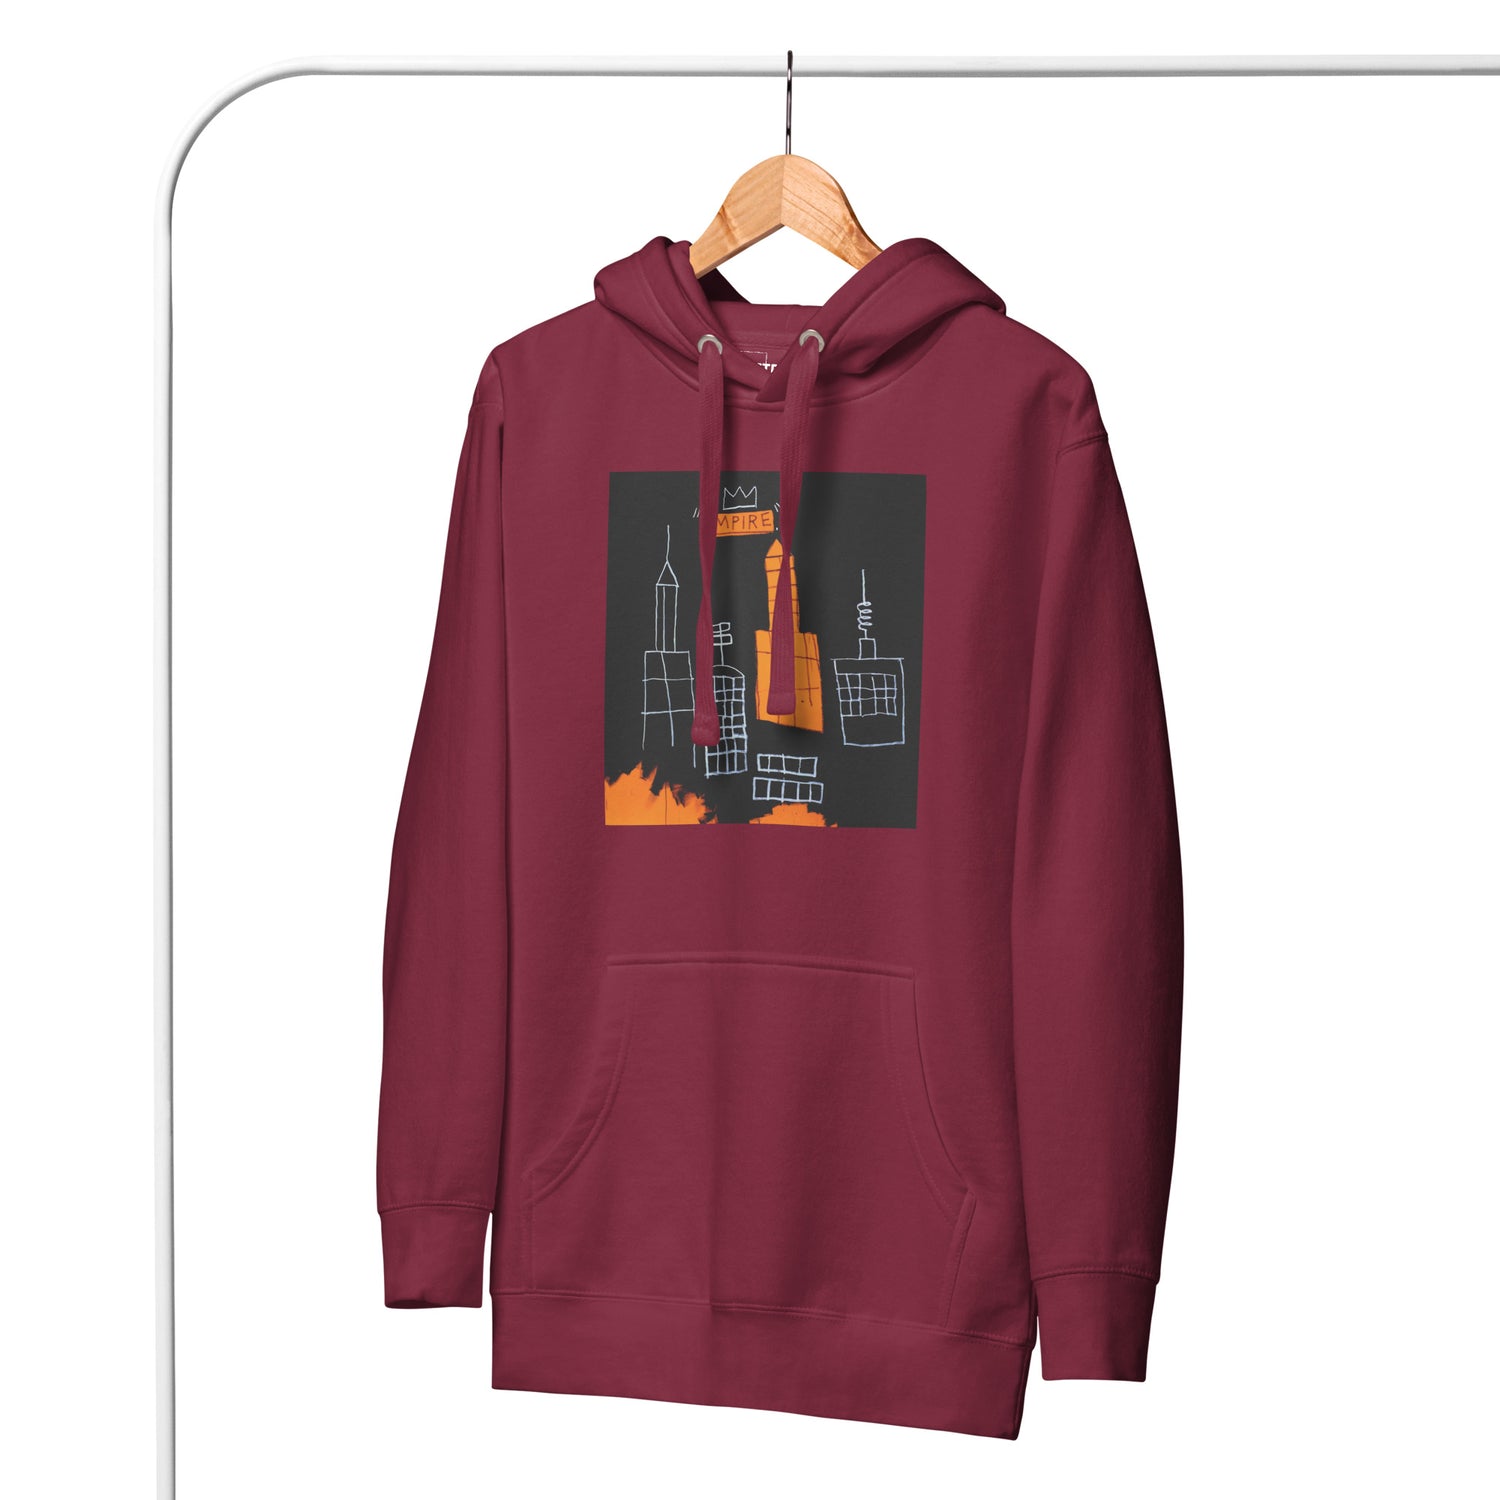 Jean-Michel Basquiat "Mecca" Artwork Printed Premium Streetwear Sweatshirt Hoodie Burgundy Red